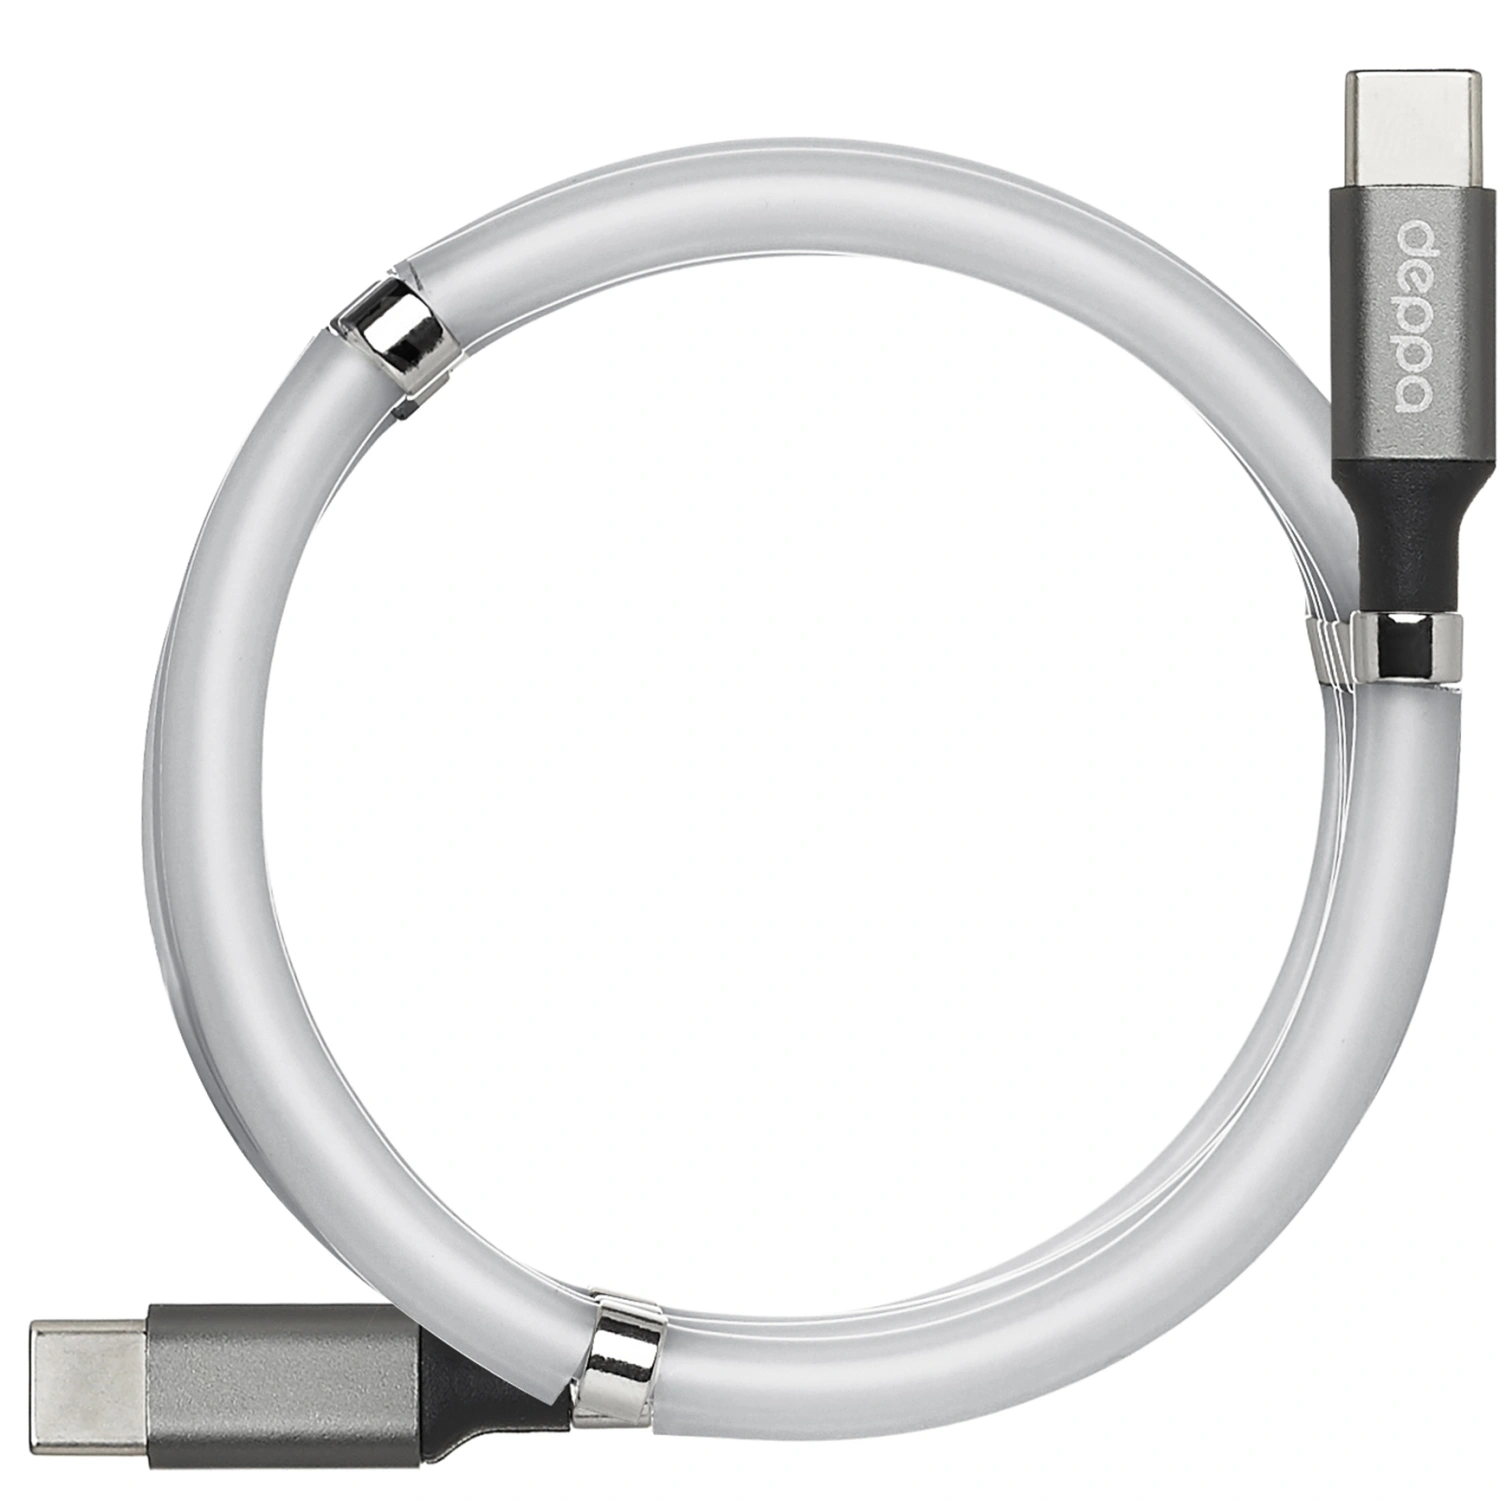 Deppa usb c. Дата-кабель deppa USB - 8-Pin для Apple витой 1.5м белый (72120). Deppa Type-c 7в1 73127. Кабель deppa Type-c - HDMI. Кабель deppa 72120.